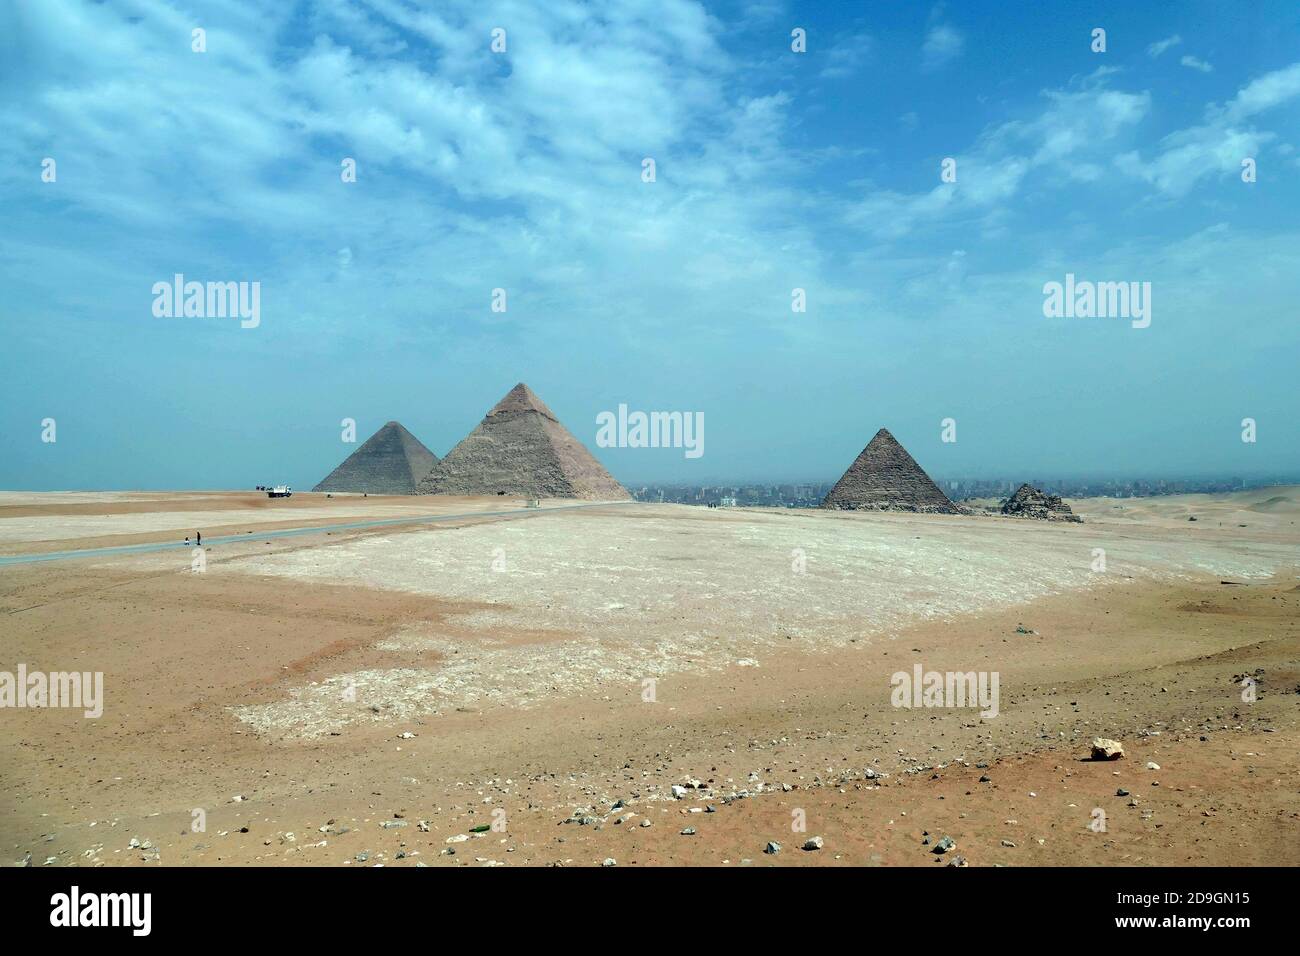 Great pyramid of Cheops Khufu, Giza, Egypt Stock Photo - Alamy